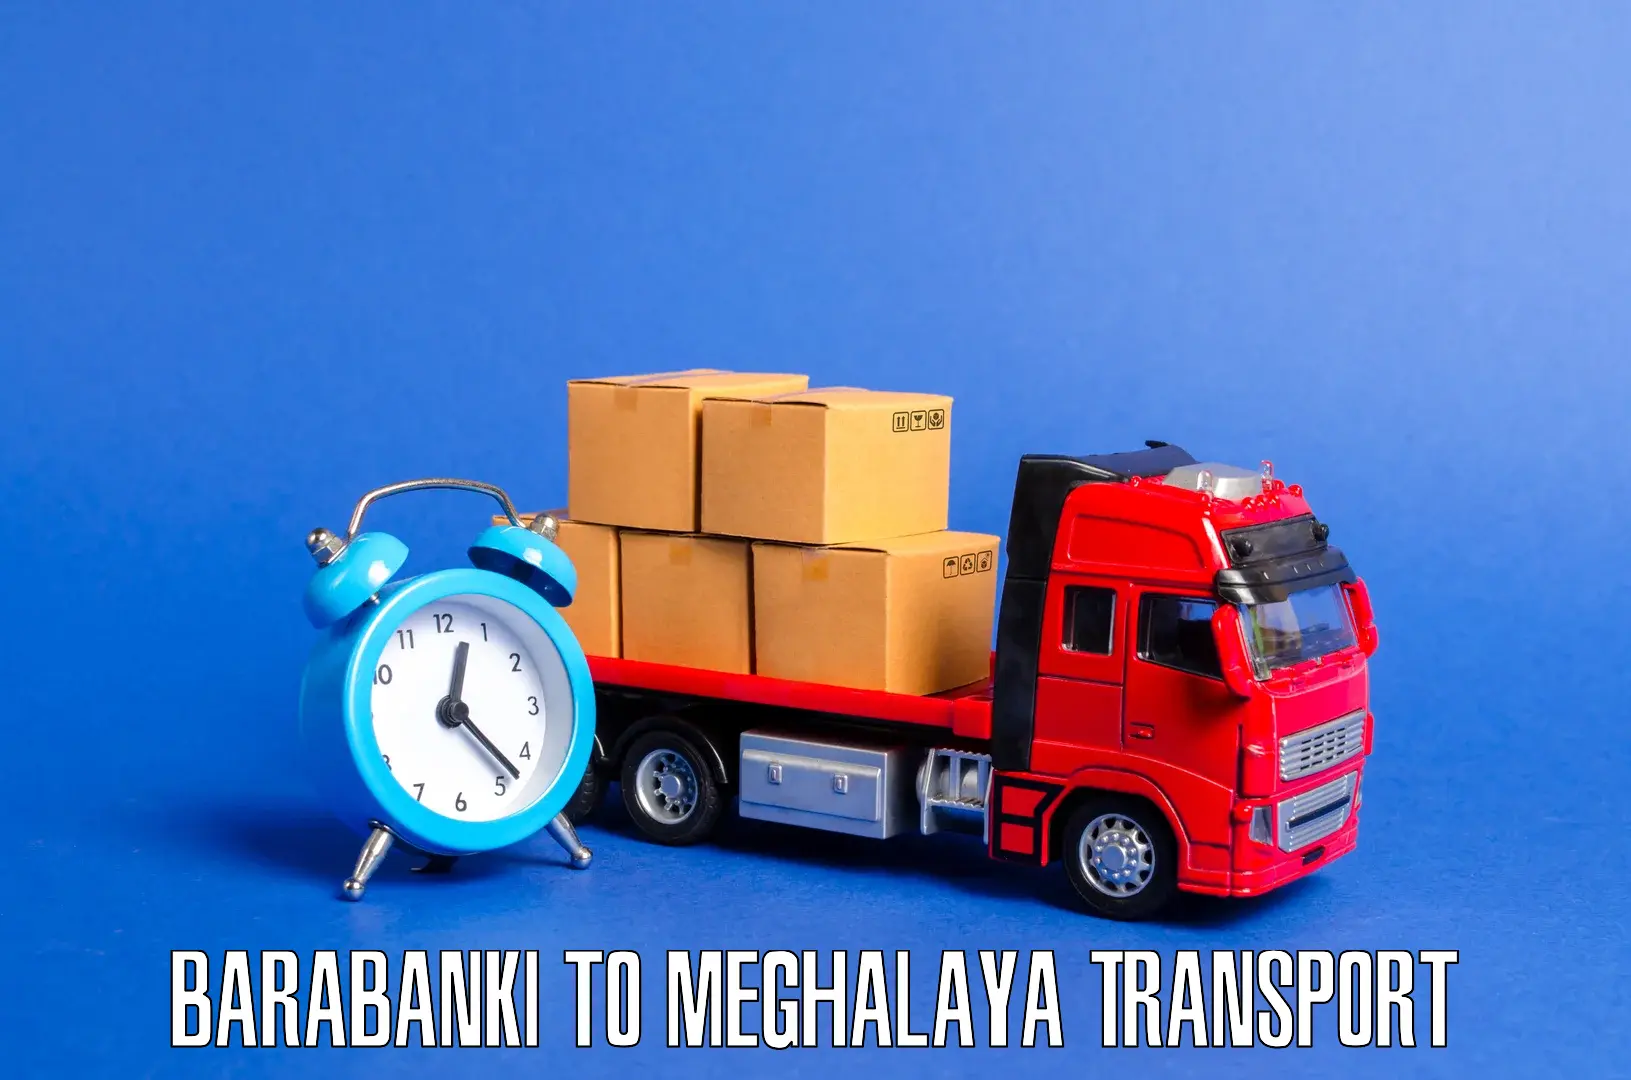 Online transport service Barabanki to Umsaw